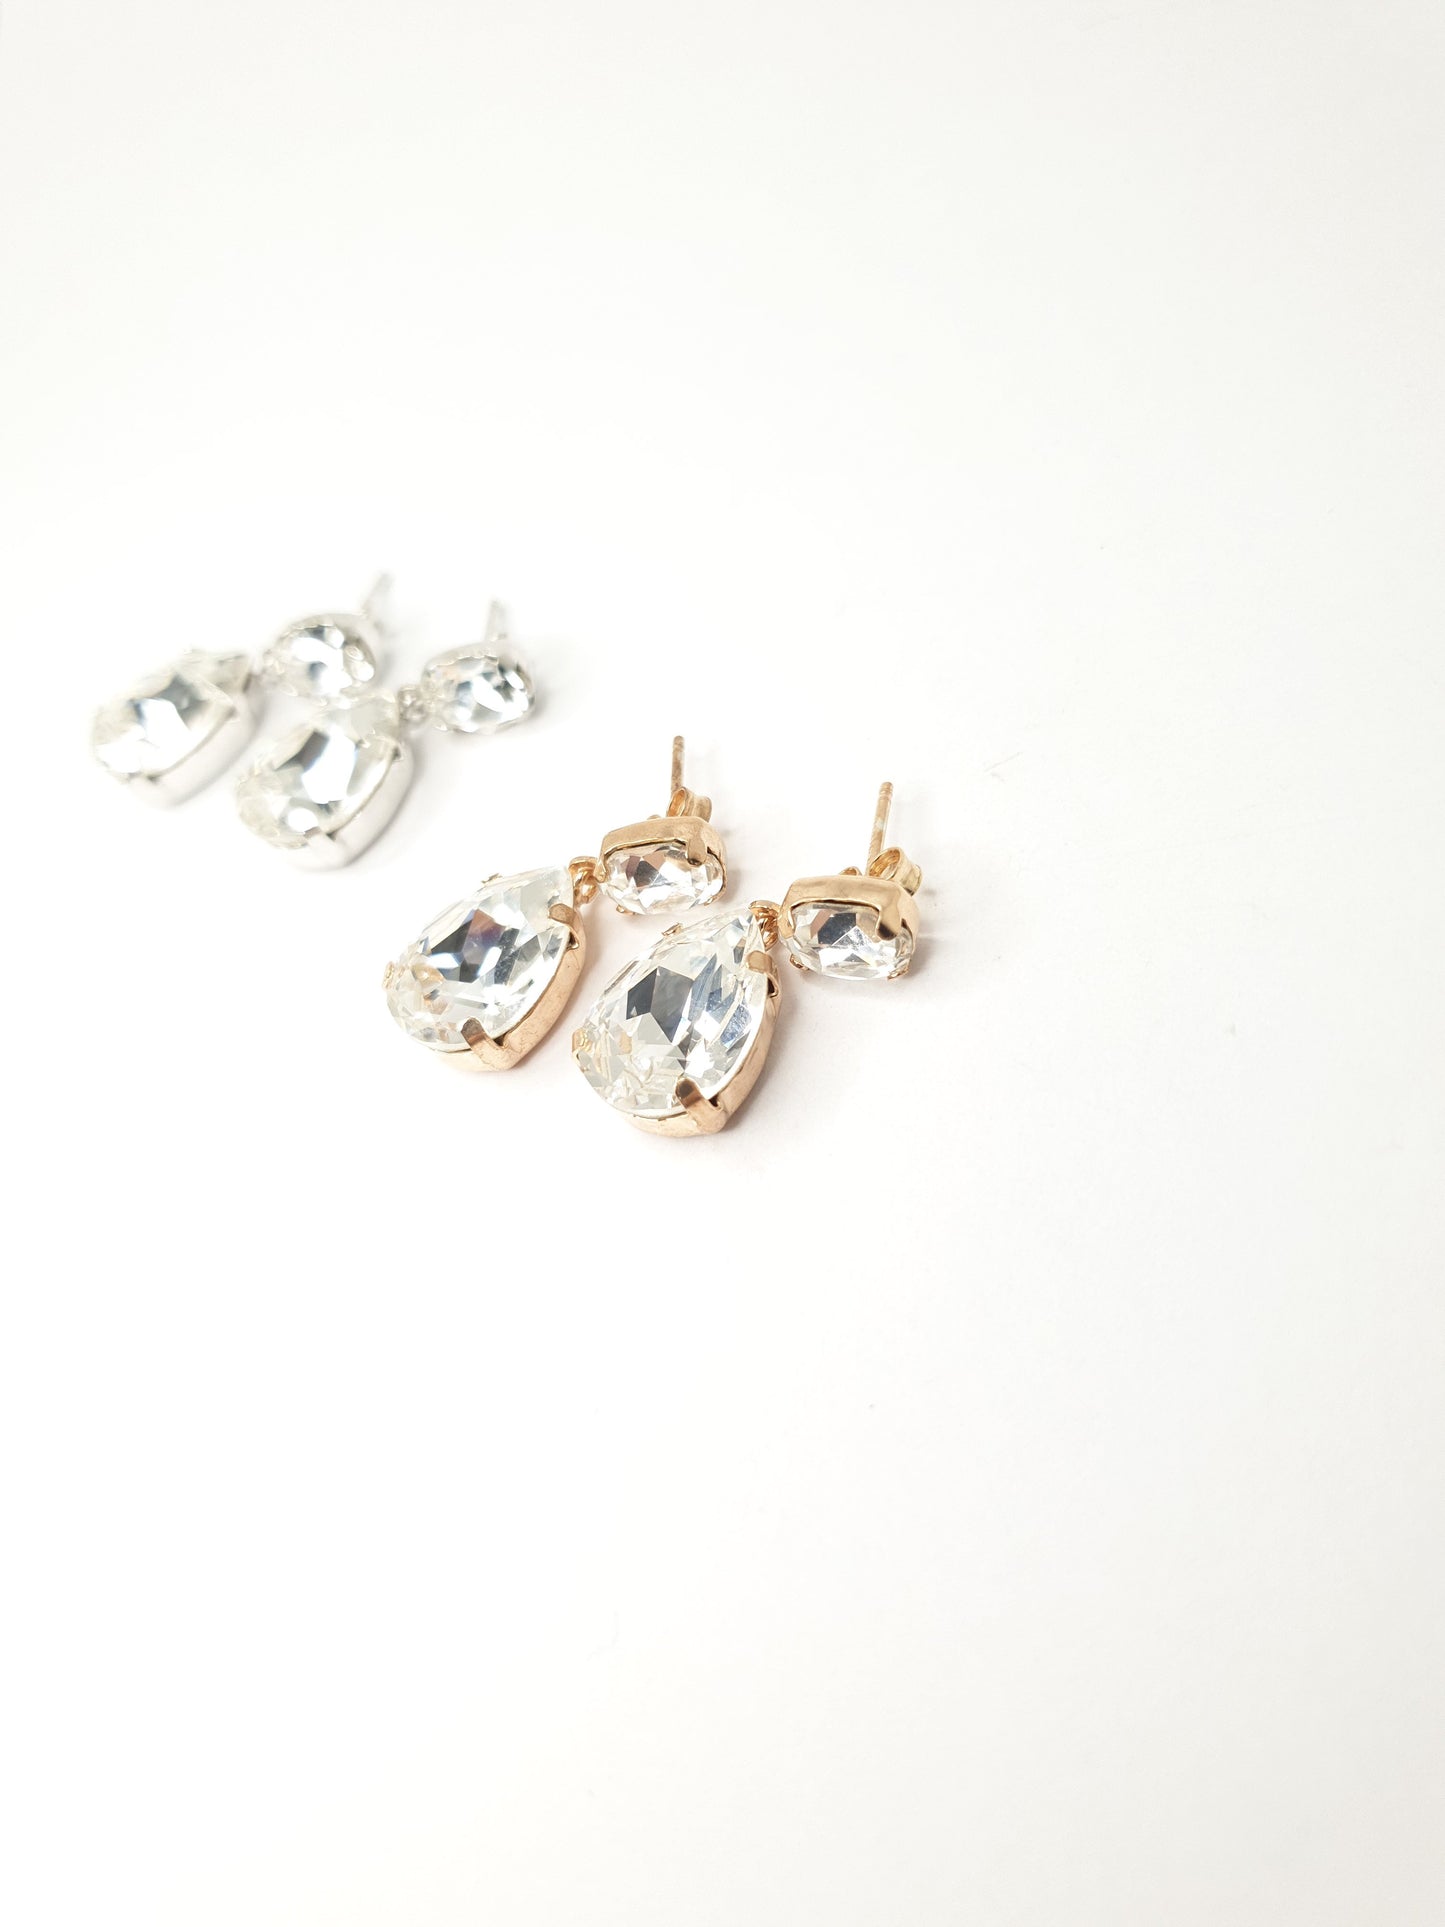 Hänge Ohrringe aus 925 Silber vergoldet mit großen weißen Swarovski Kristallen, je Ohrring zwei ovale Kristalle, einer oben und einer unten.